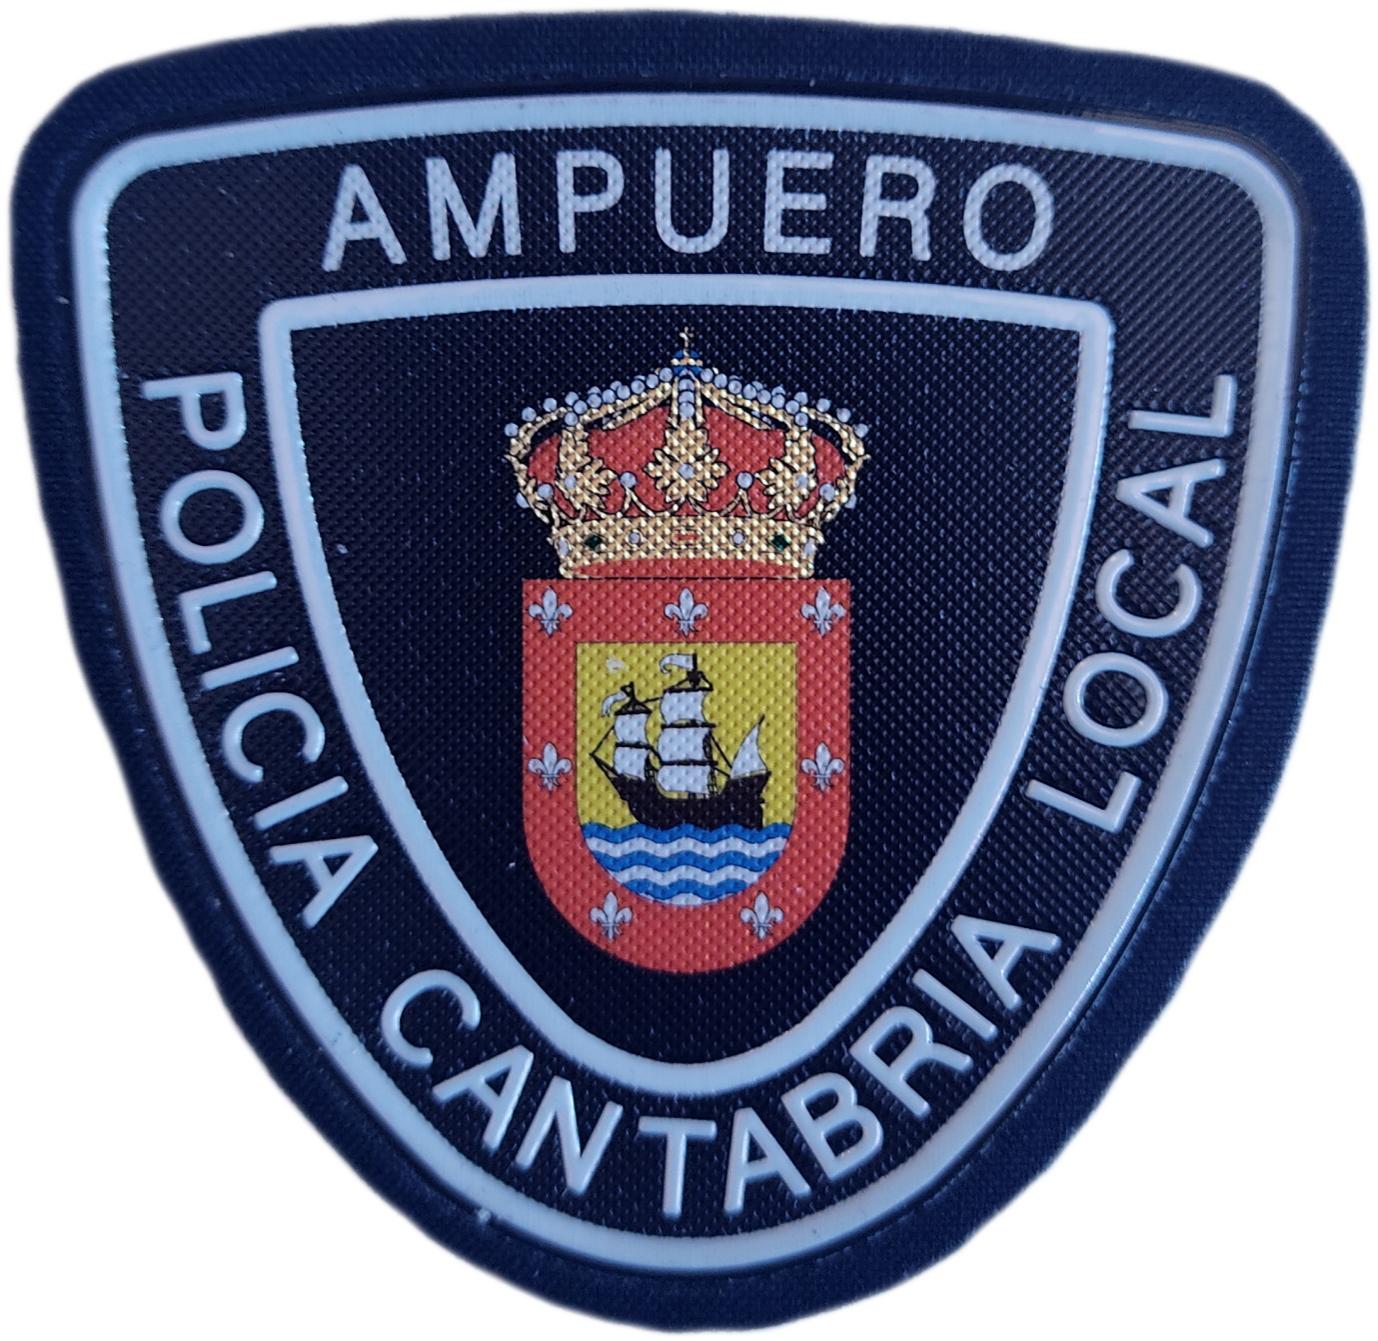 Policía Local Ampuero Cantabria parche insignia emblema distintivo